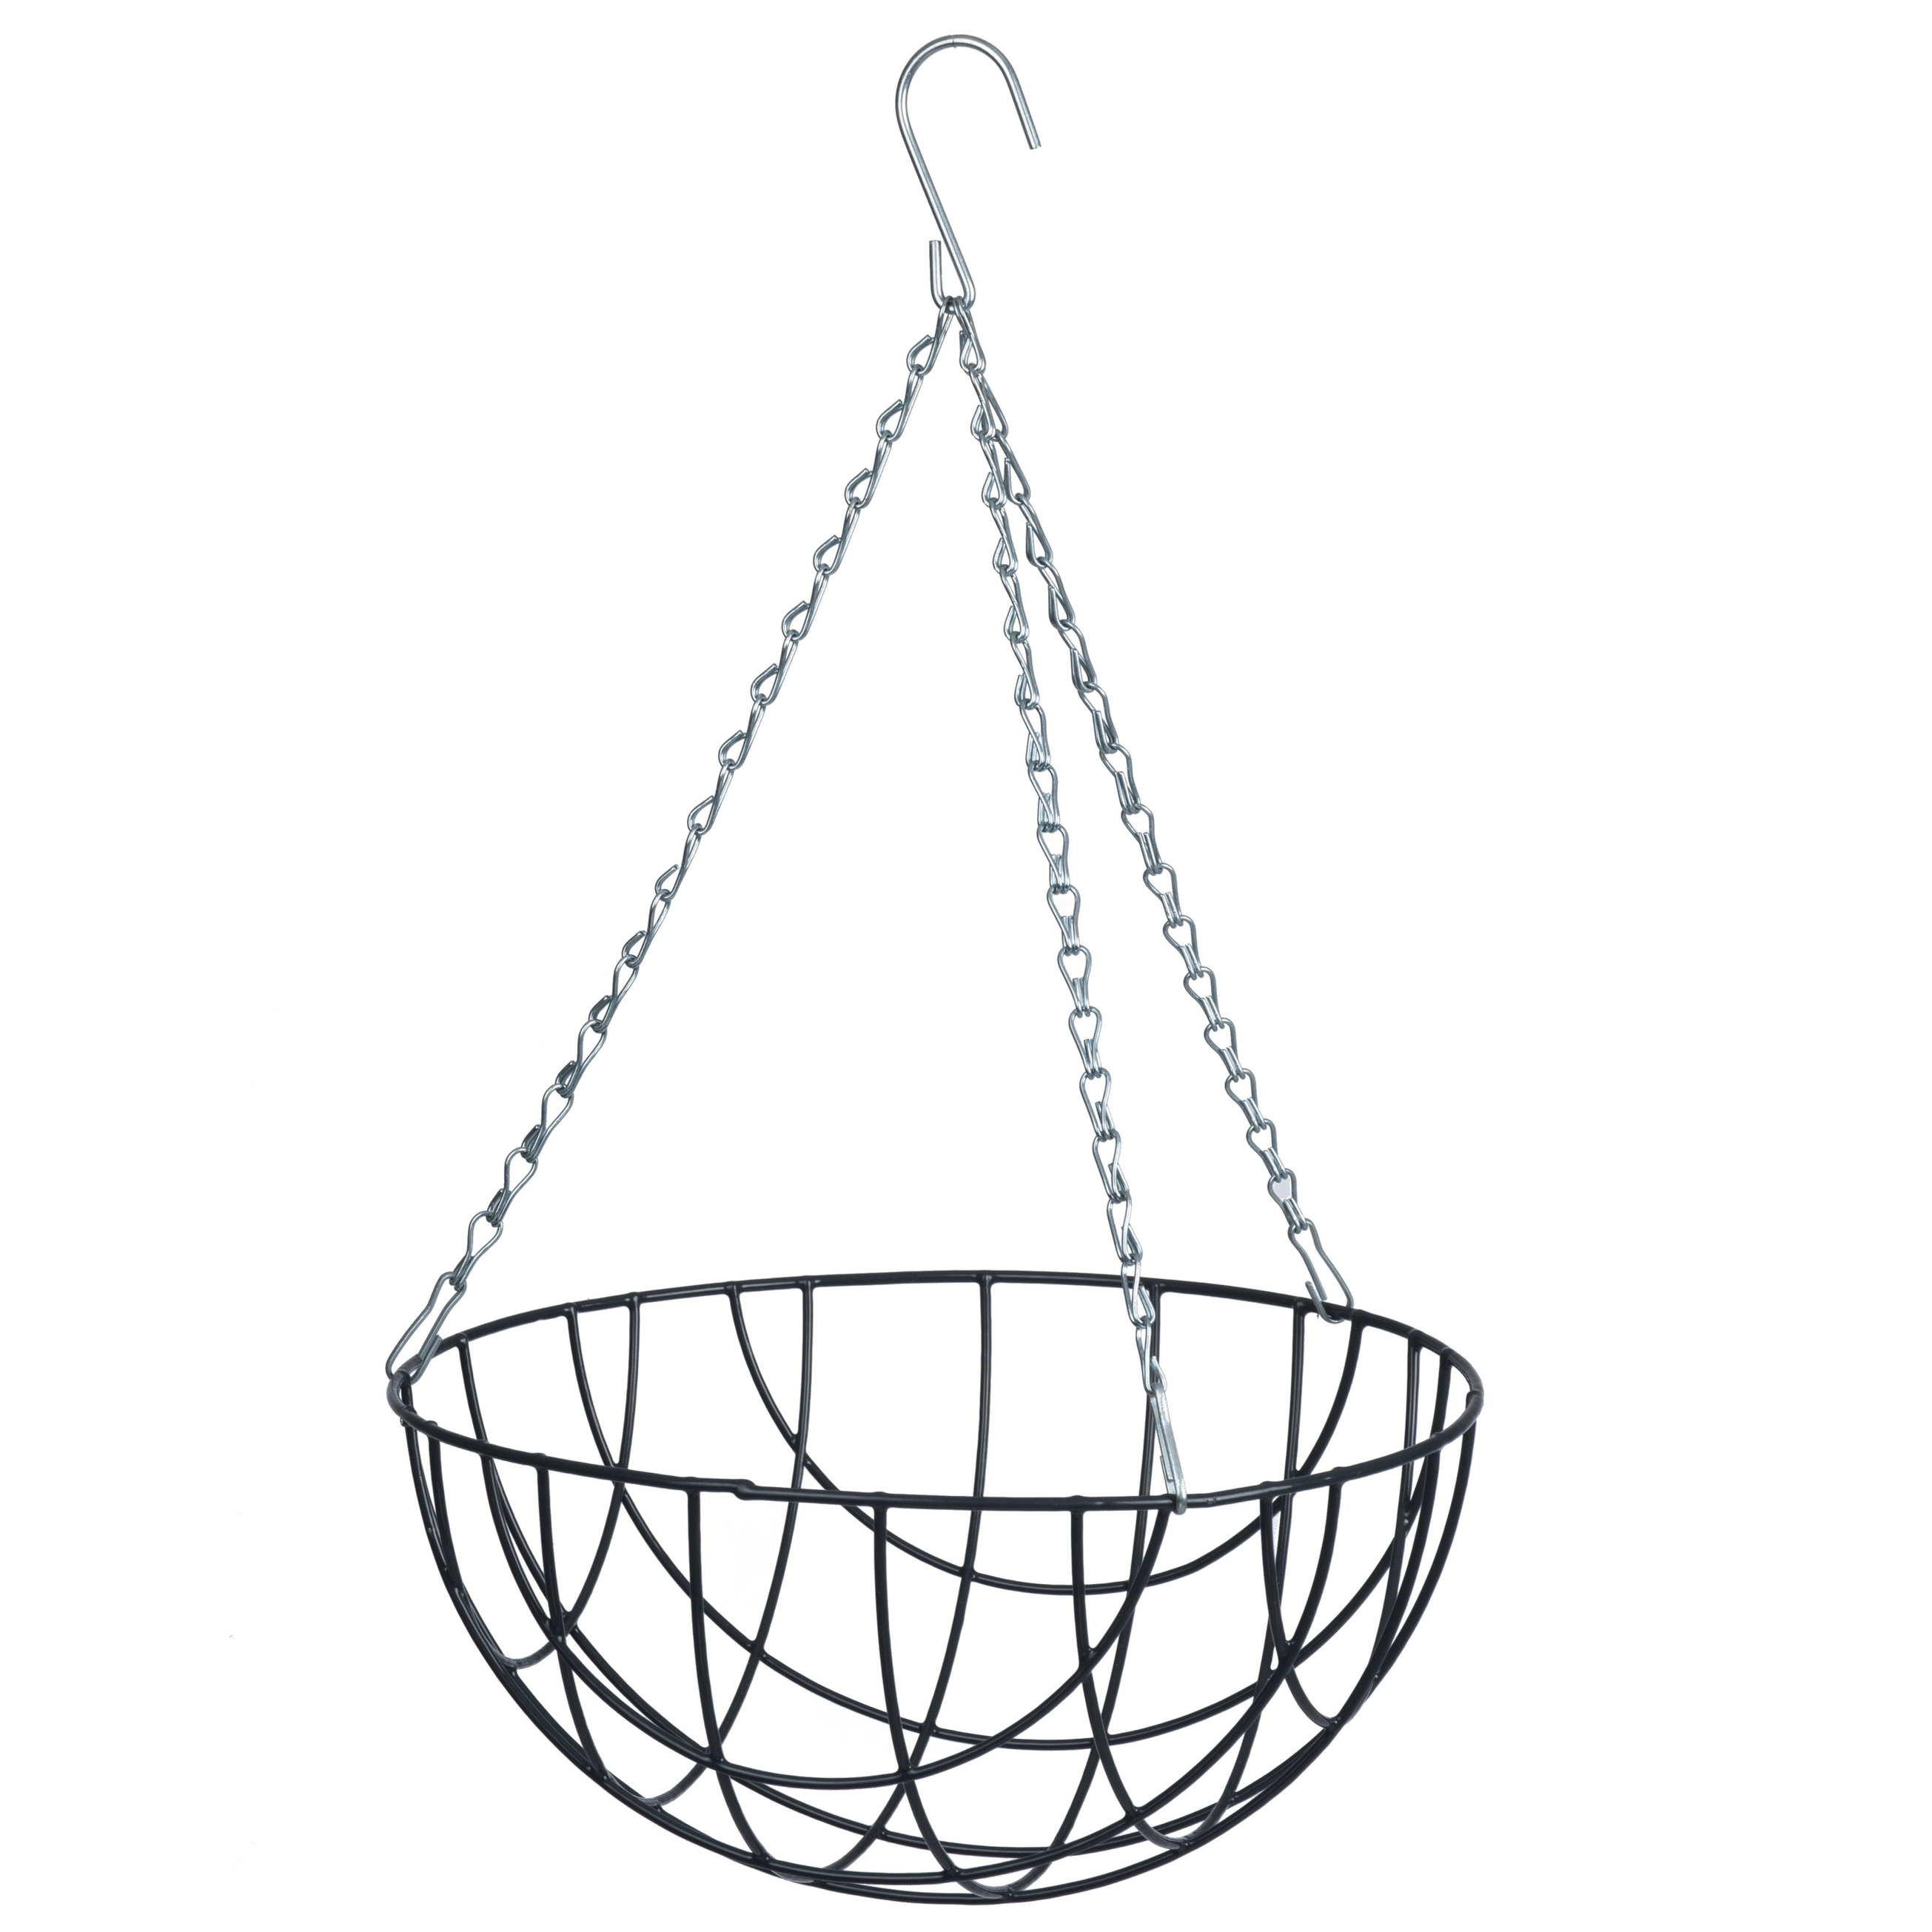 Hanging basket-plantenbak grijs met ketting 17 x 35 x 35 cm metaaldraad hangende bloemenmand